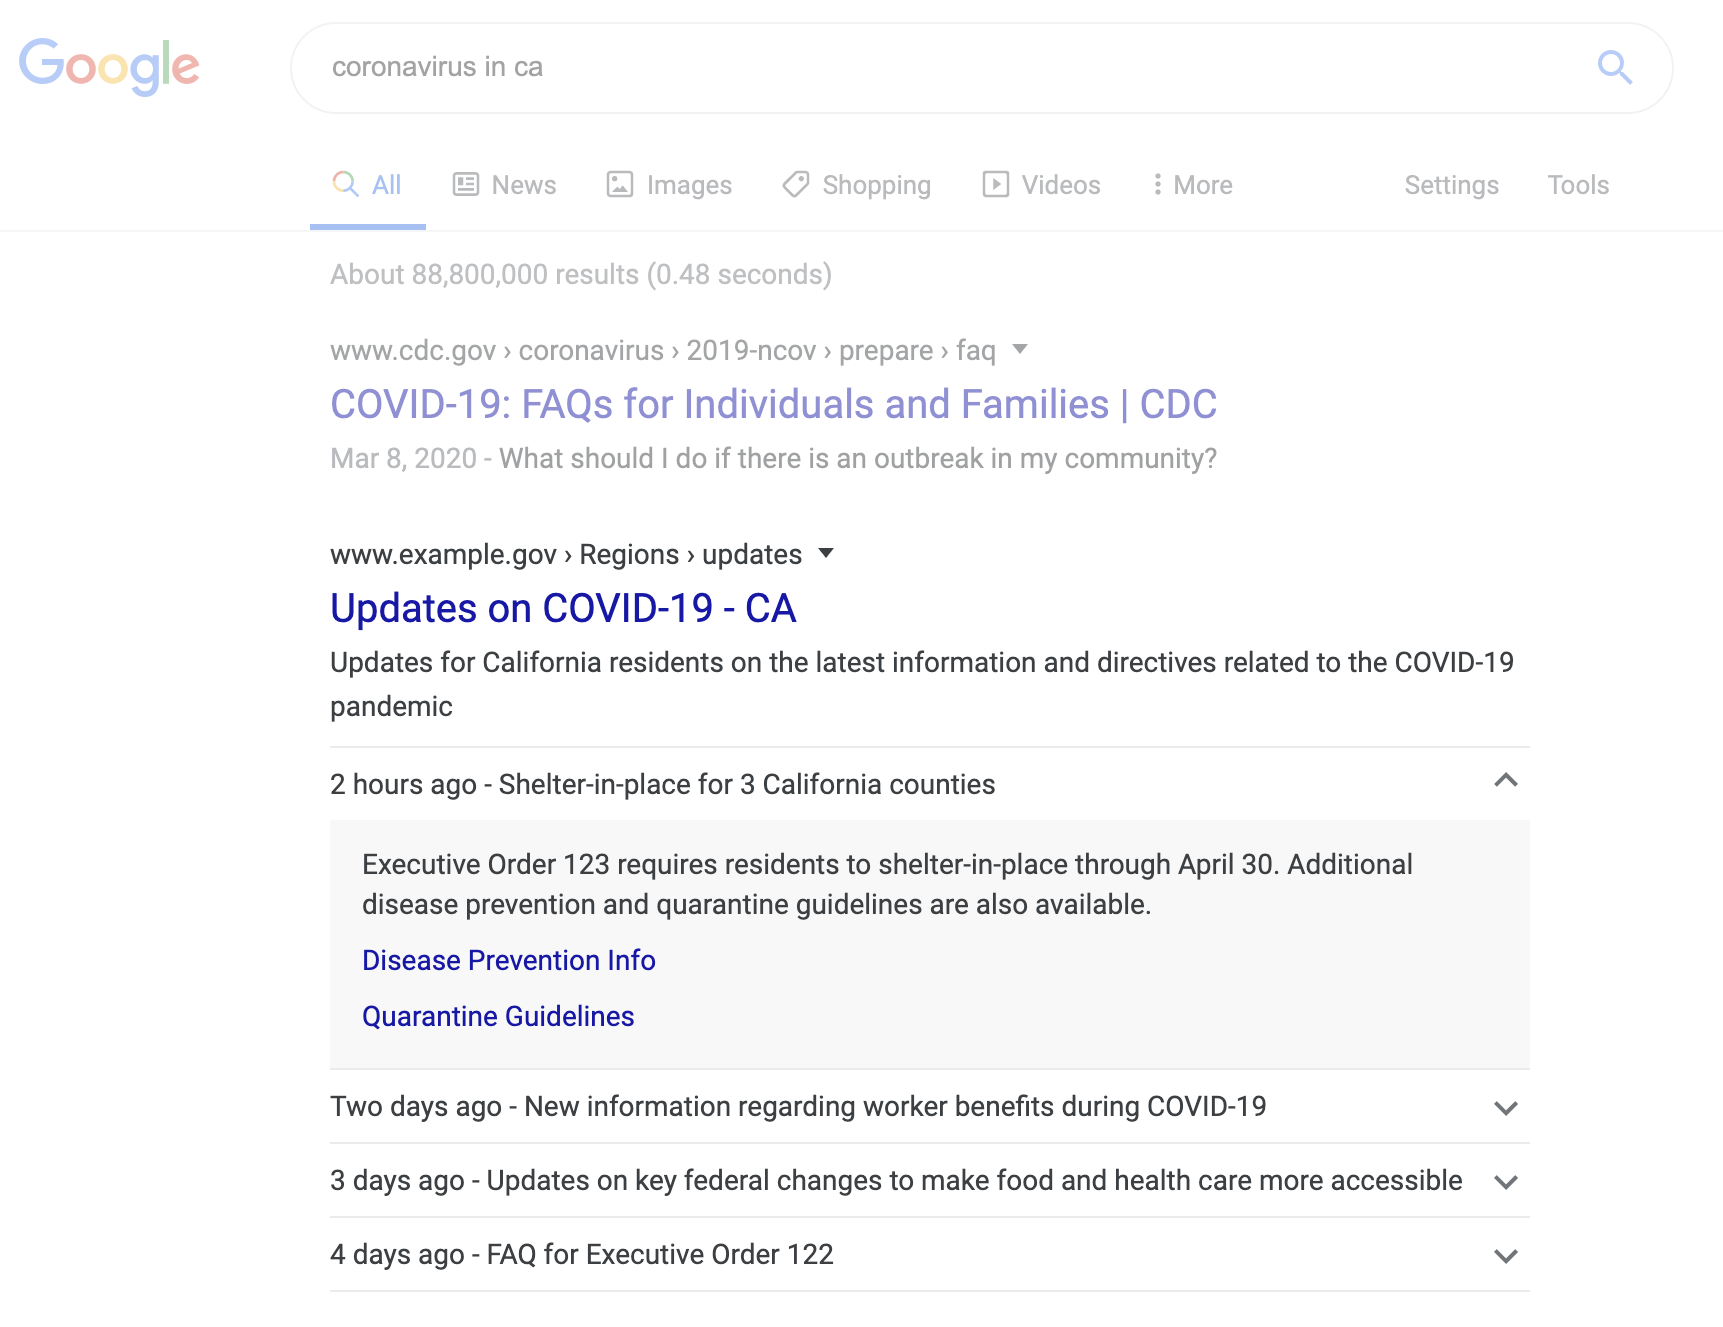 Ví dụ về thông báo liên quan đến COVID-19 trong Google Tìm kiếm